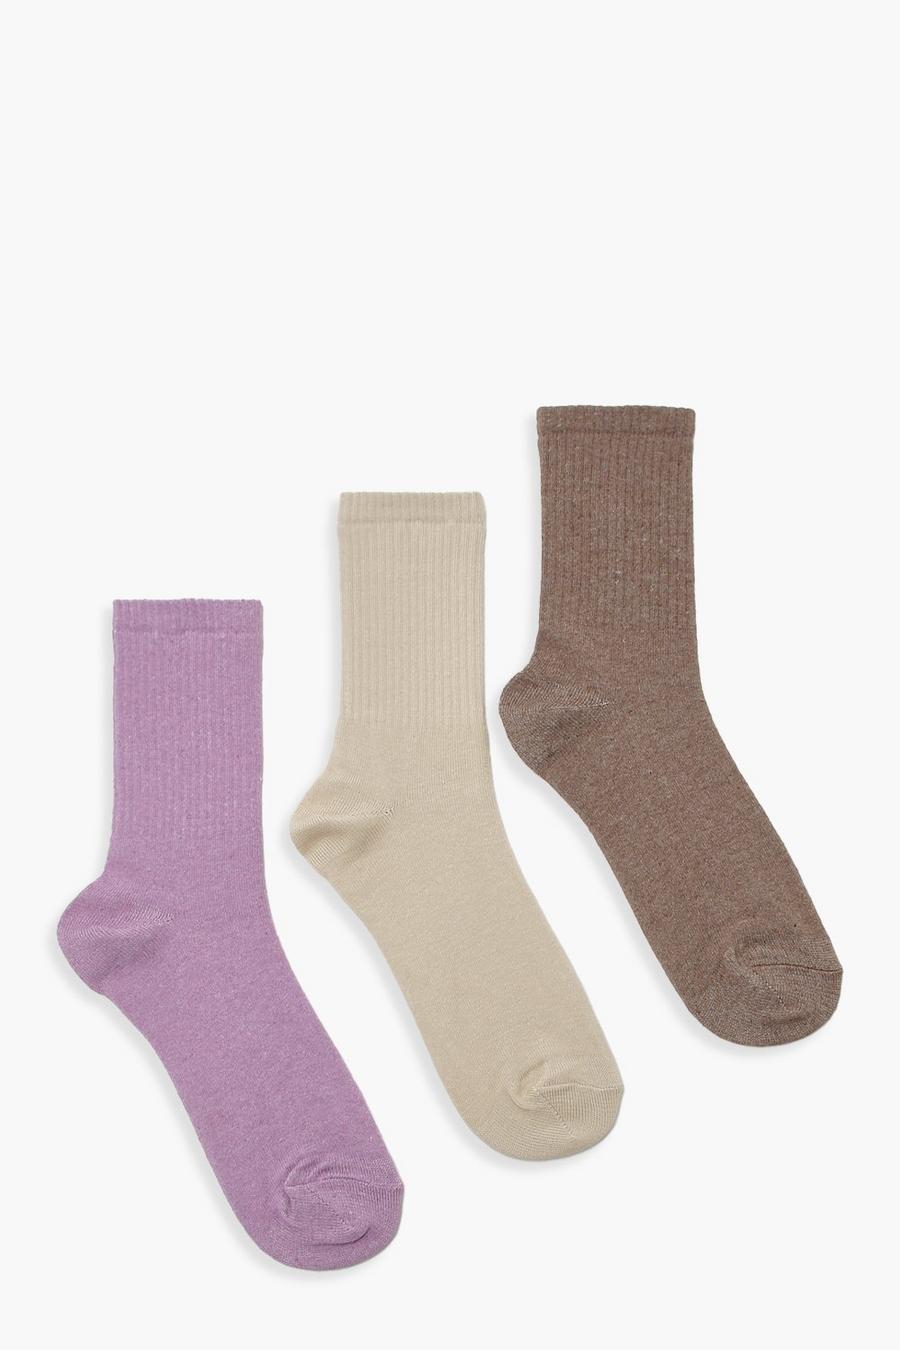 Pack de 3 pares de calcetines en tonos neutros, Multi multicolor